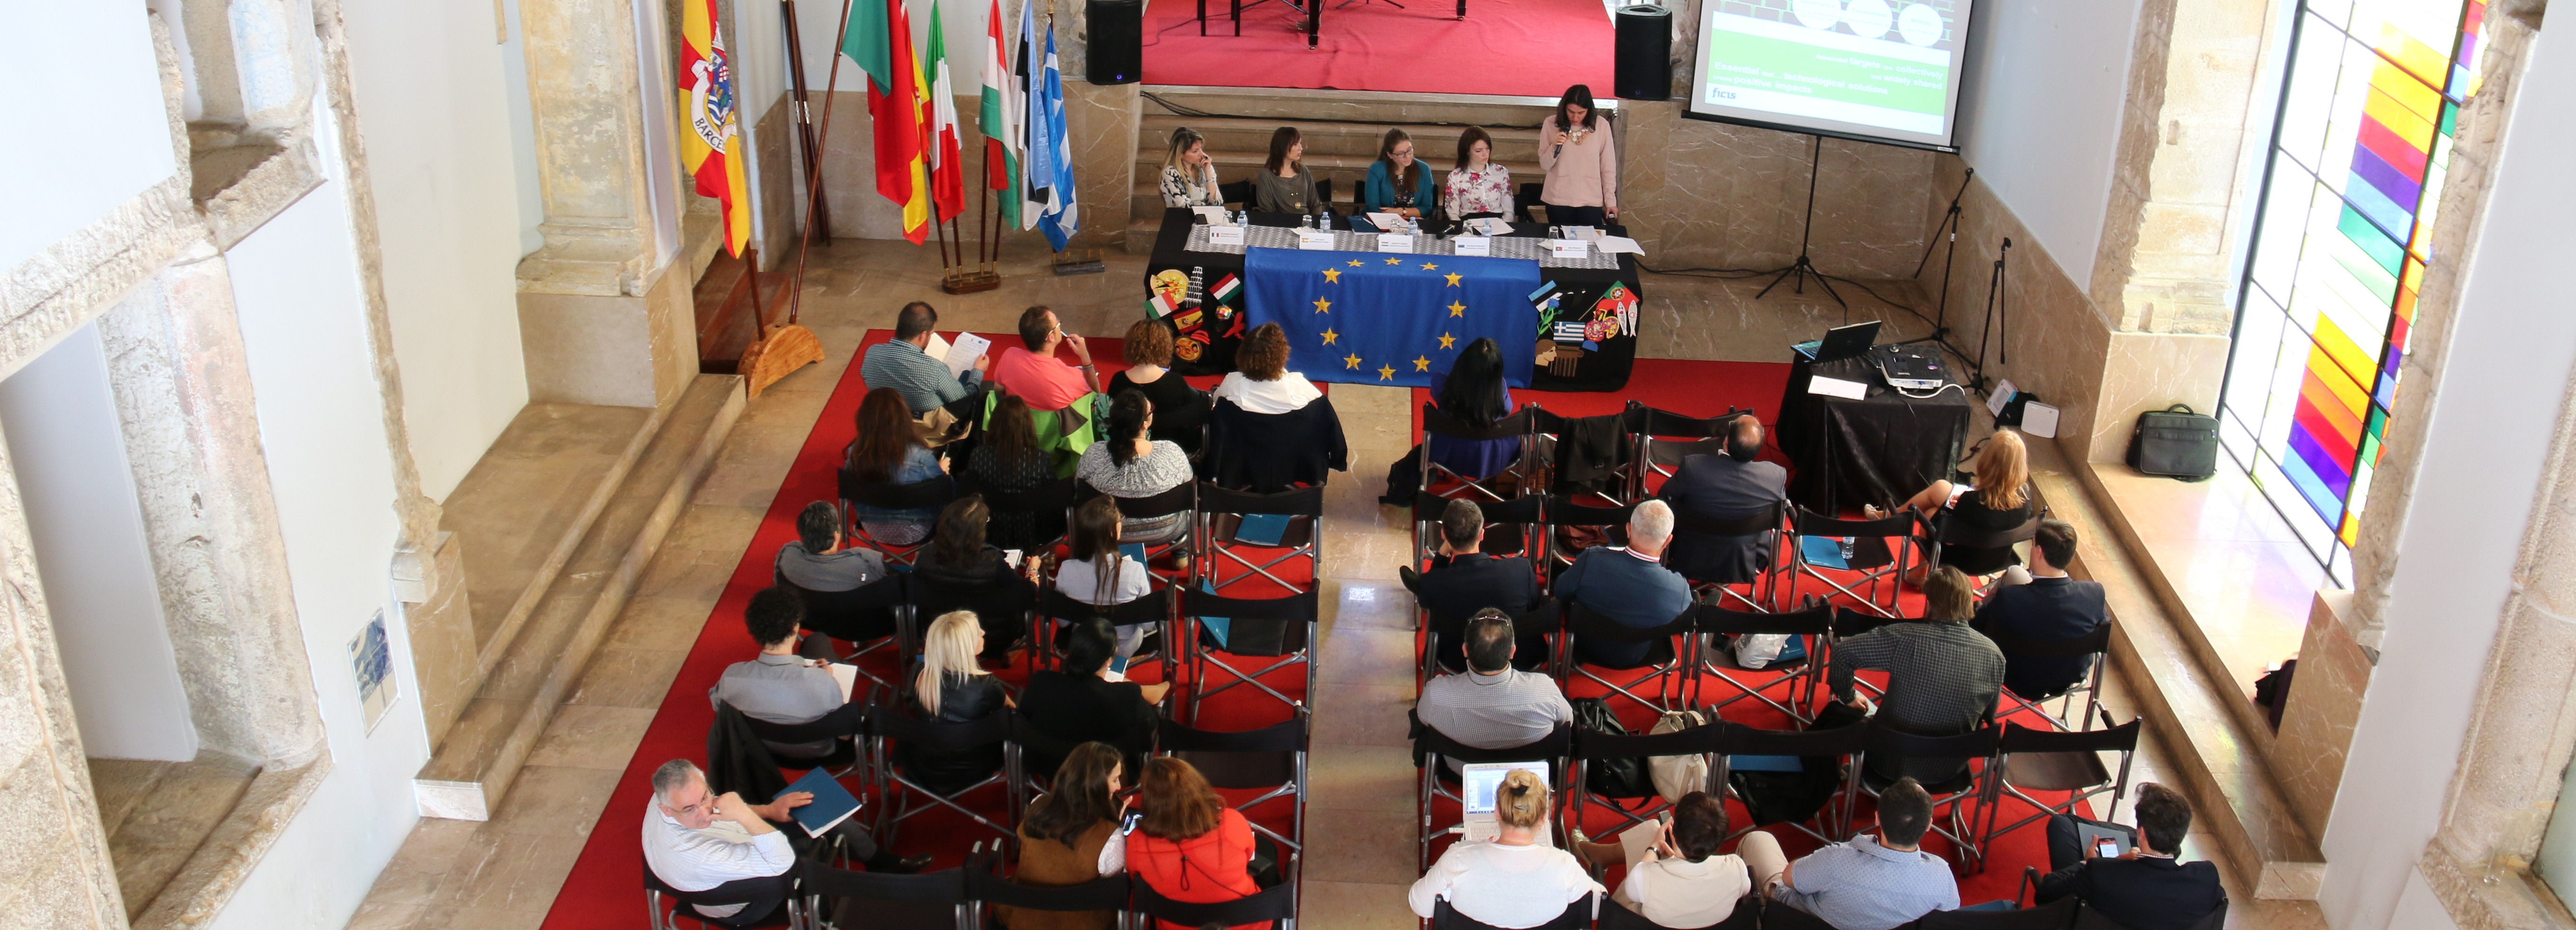 Participação cívica e democrática na EU em debate no Salão Nobre